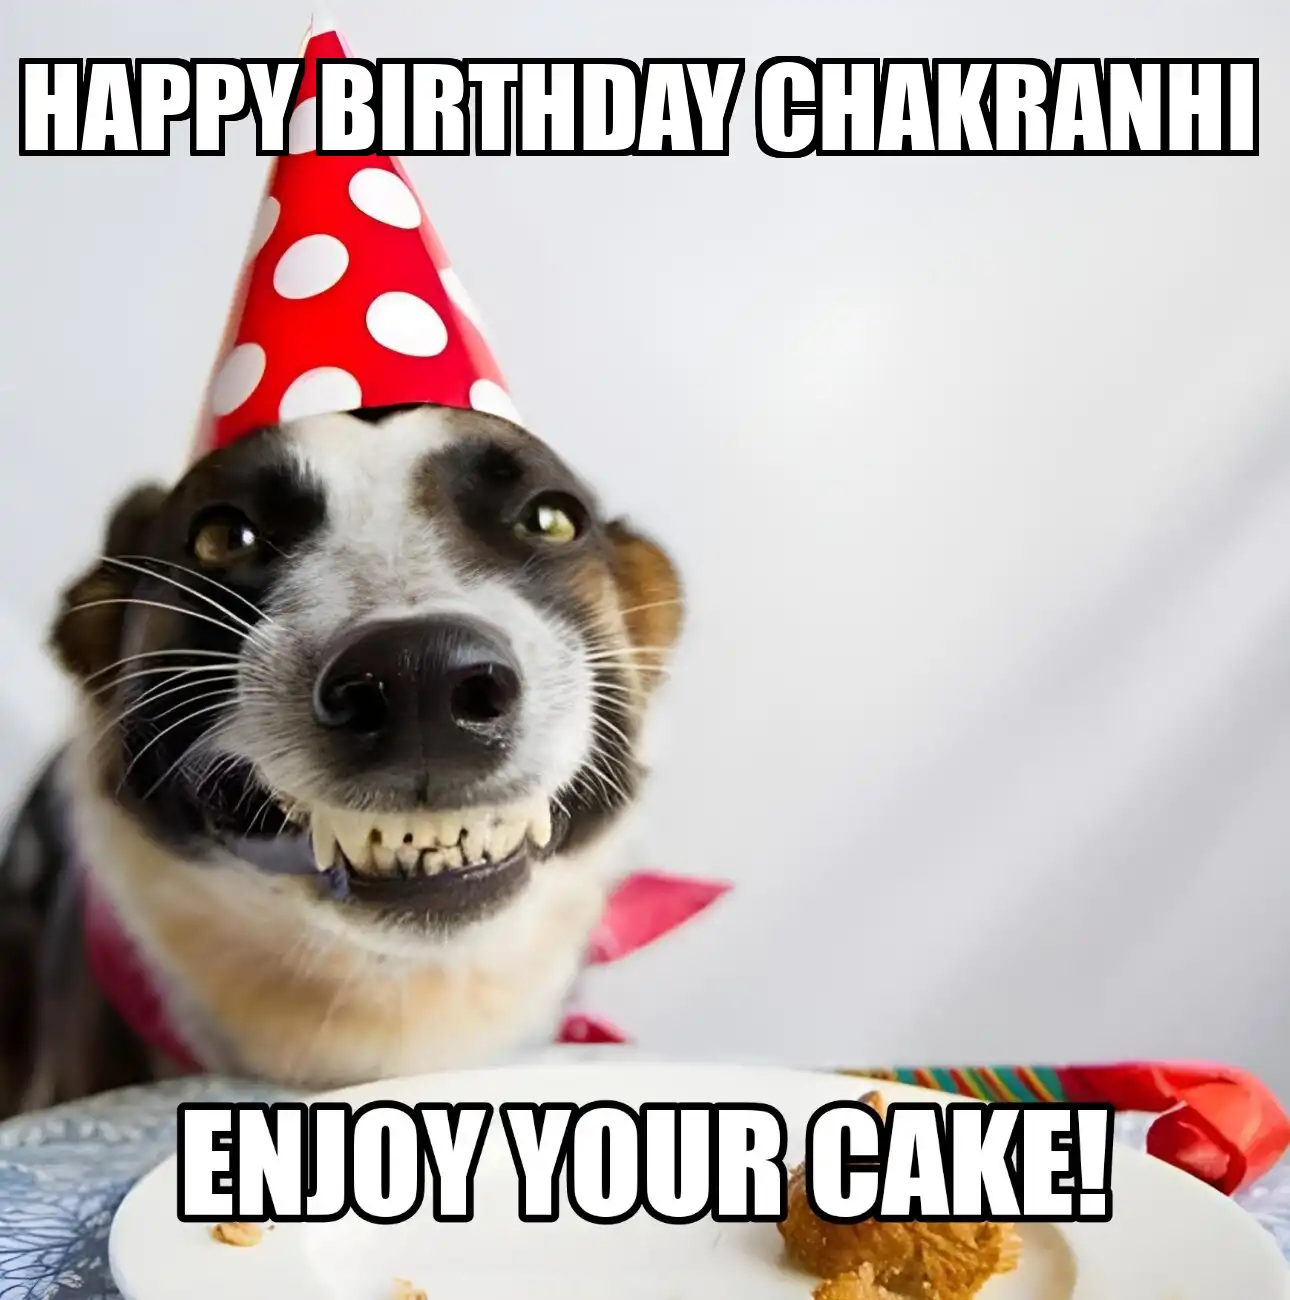 Happy Birthday Chakranhi Enjoy Your Cake Dog Meme